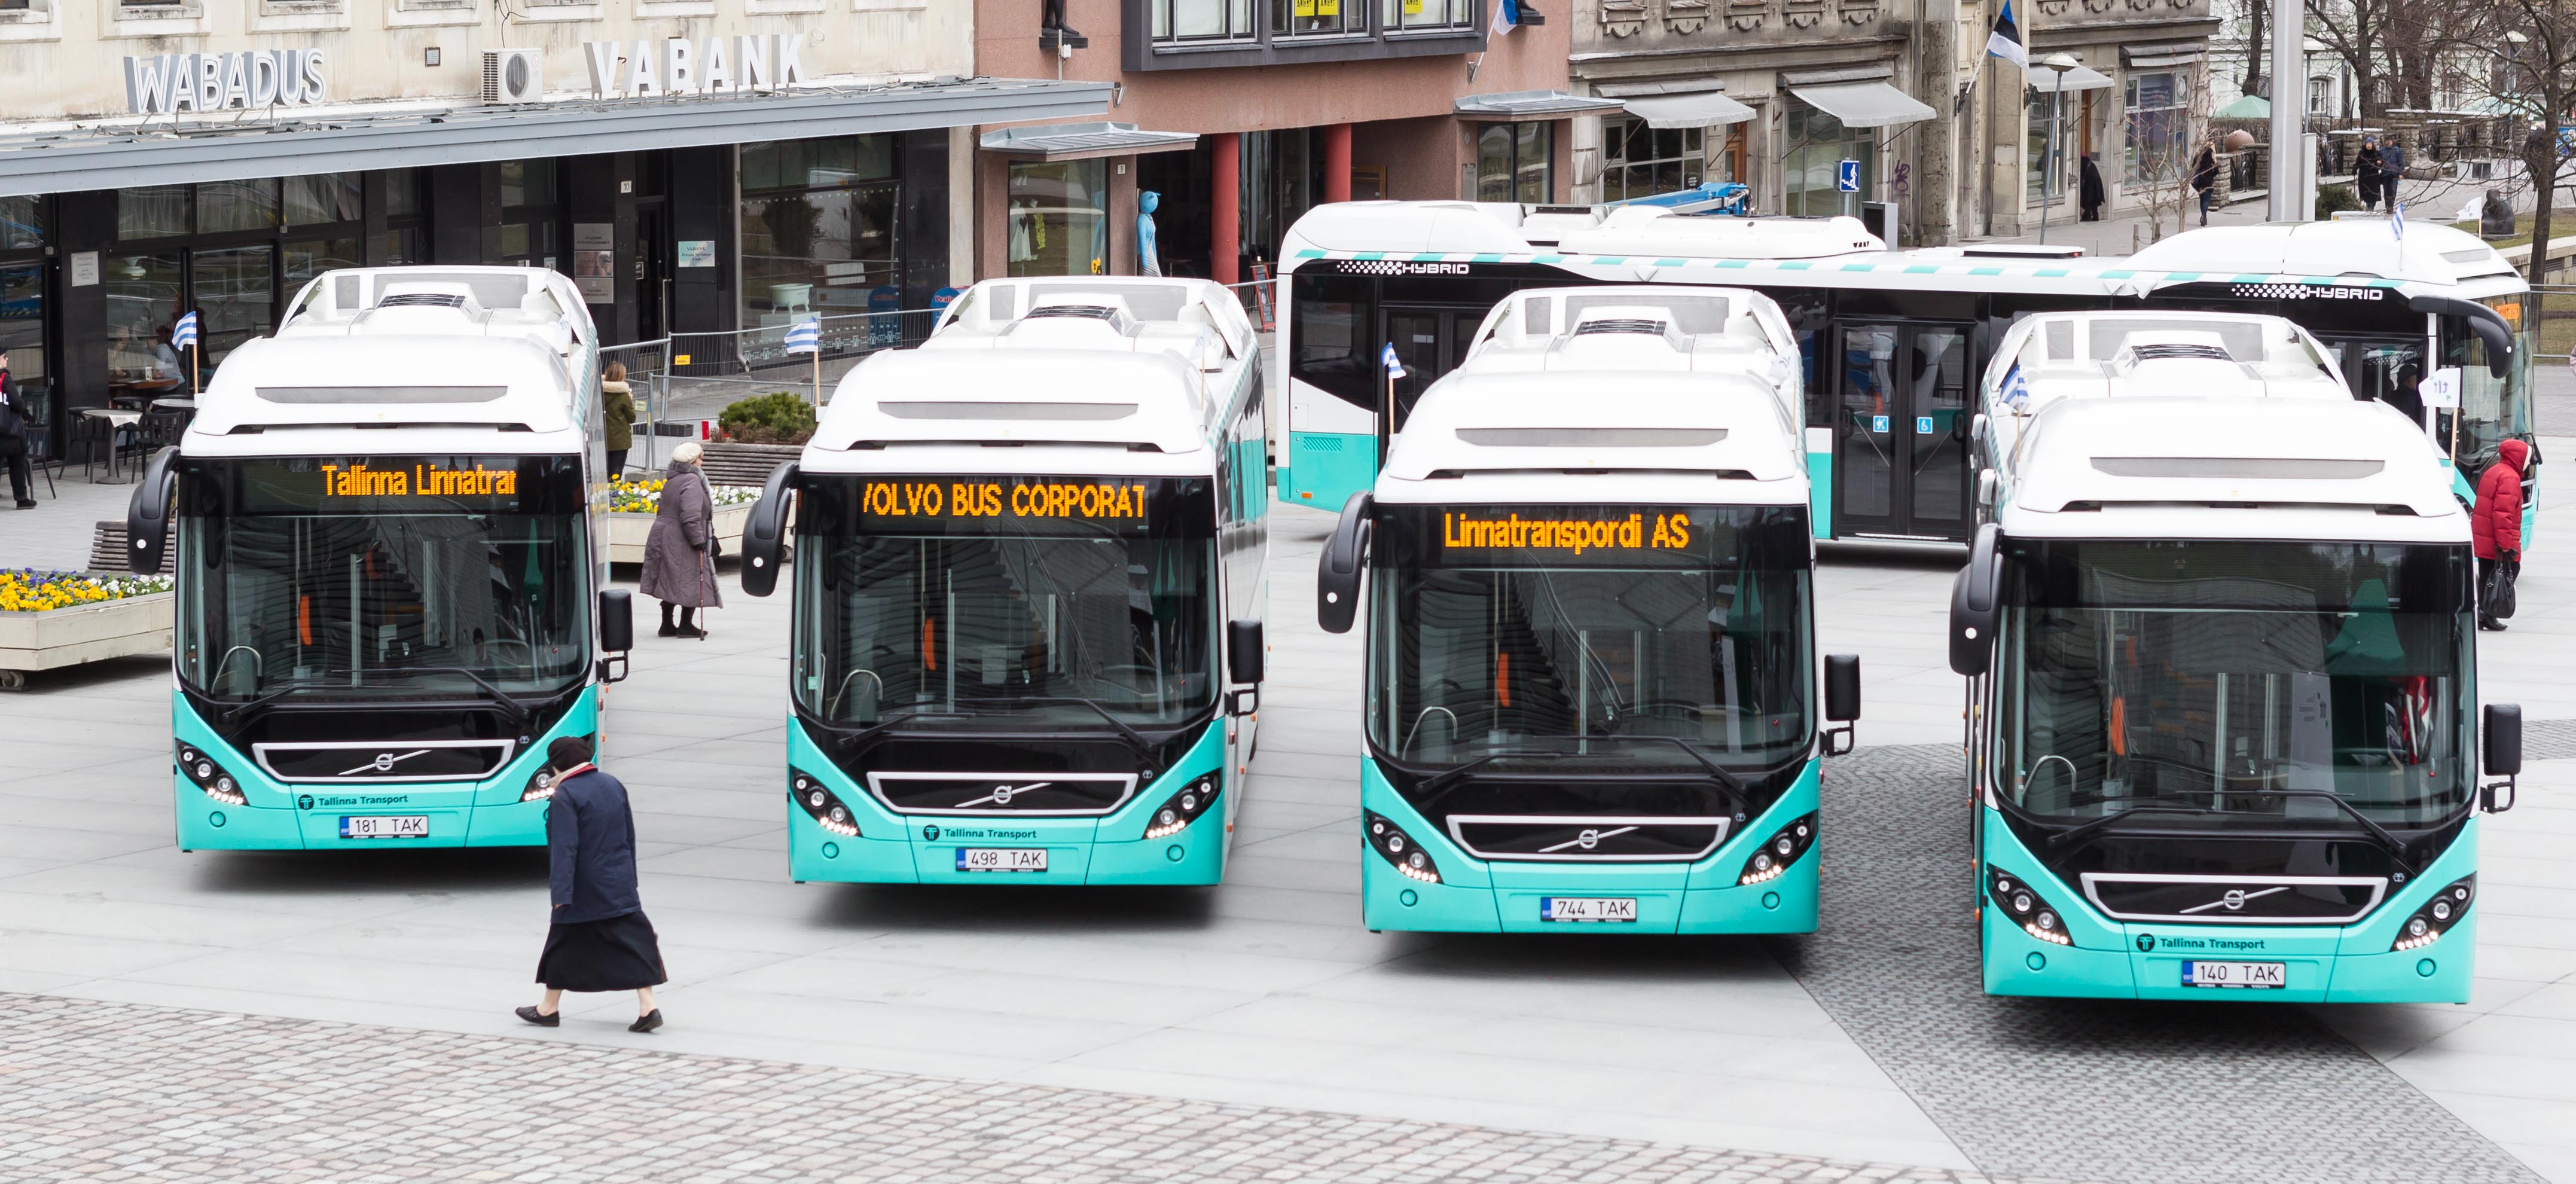 Фирма автобус 1. Эстонские линии какой автобус.